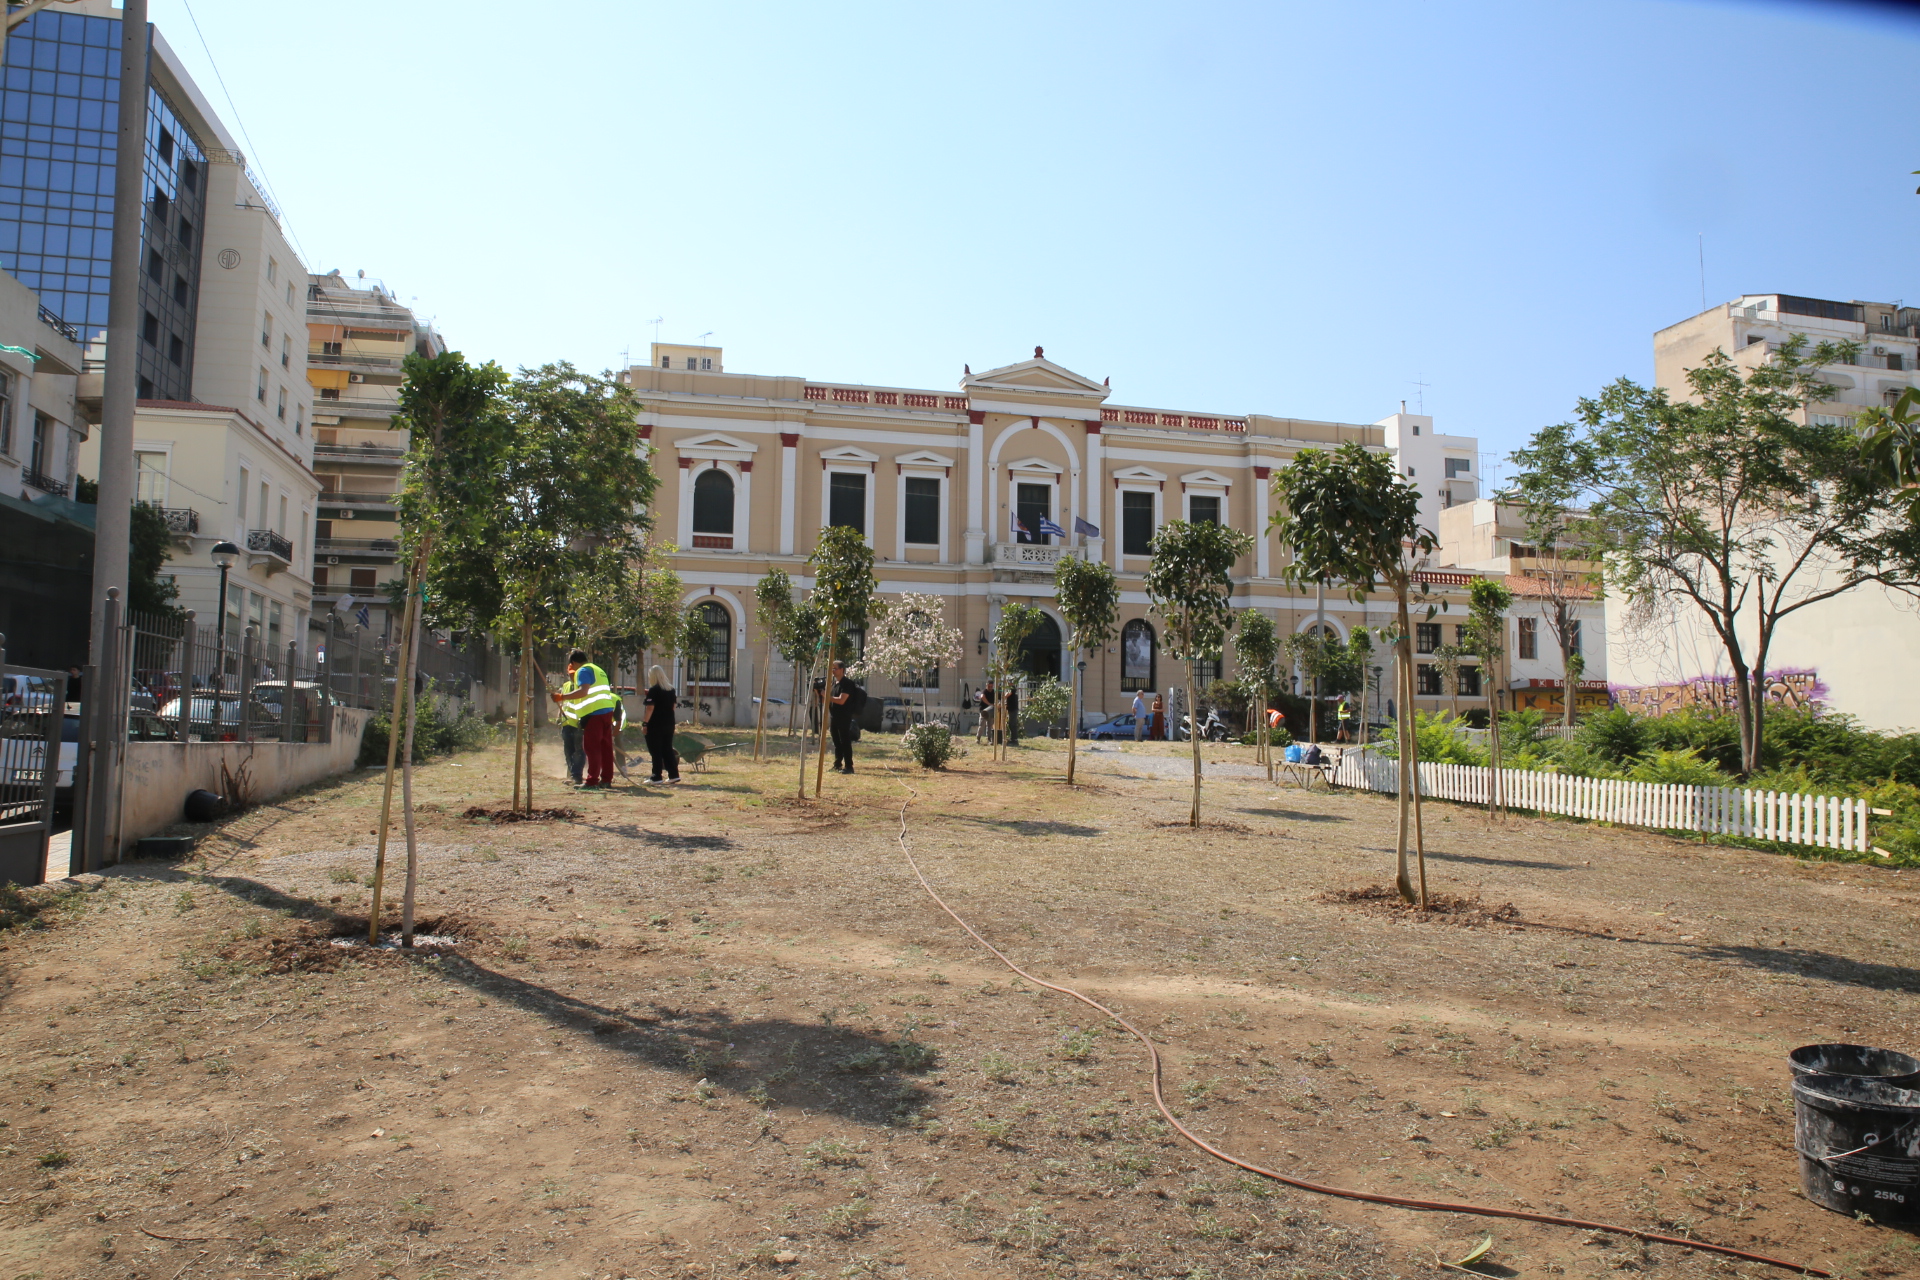 Δήμος Πειραιά: Ανάπλαση πρασίνου στο οικόπεδο απέναντι από τη Δημοτική Πινακοθήκη